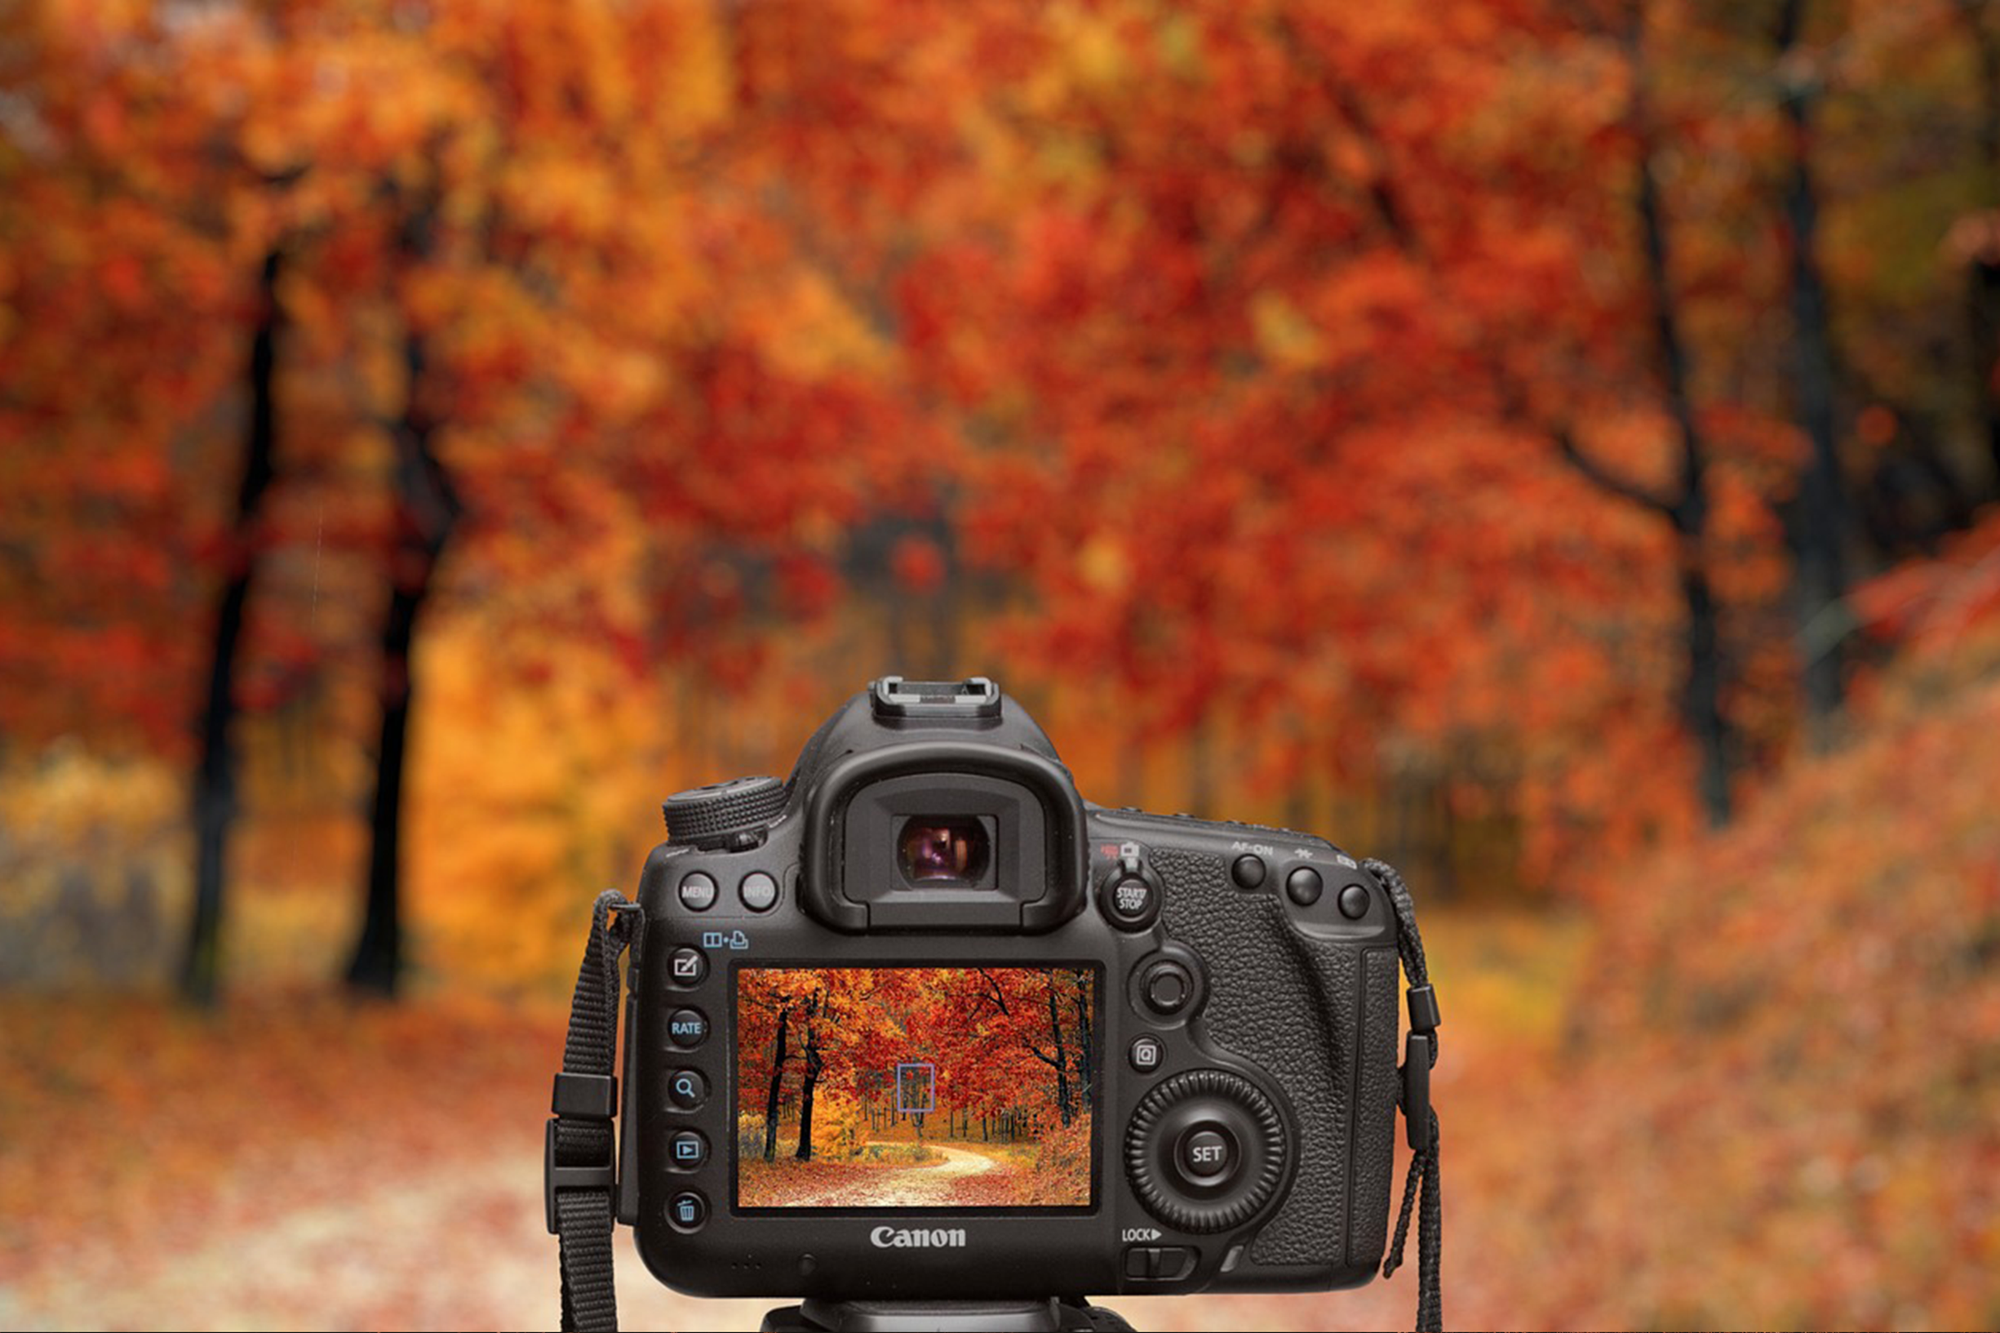 Kreative Herbst-Fotografie: Wenn die Natur ihr Farbenspiel entfaltet